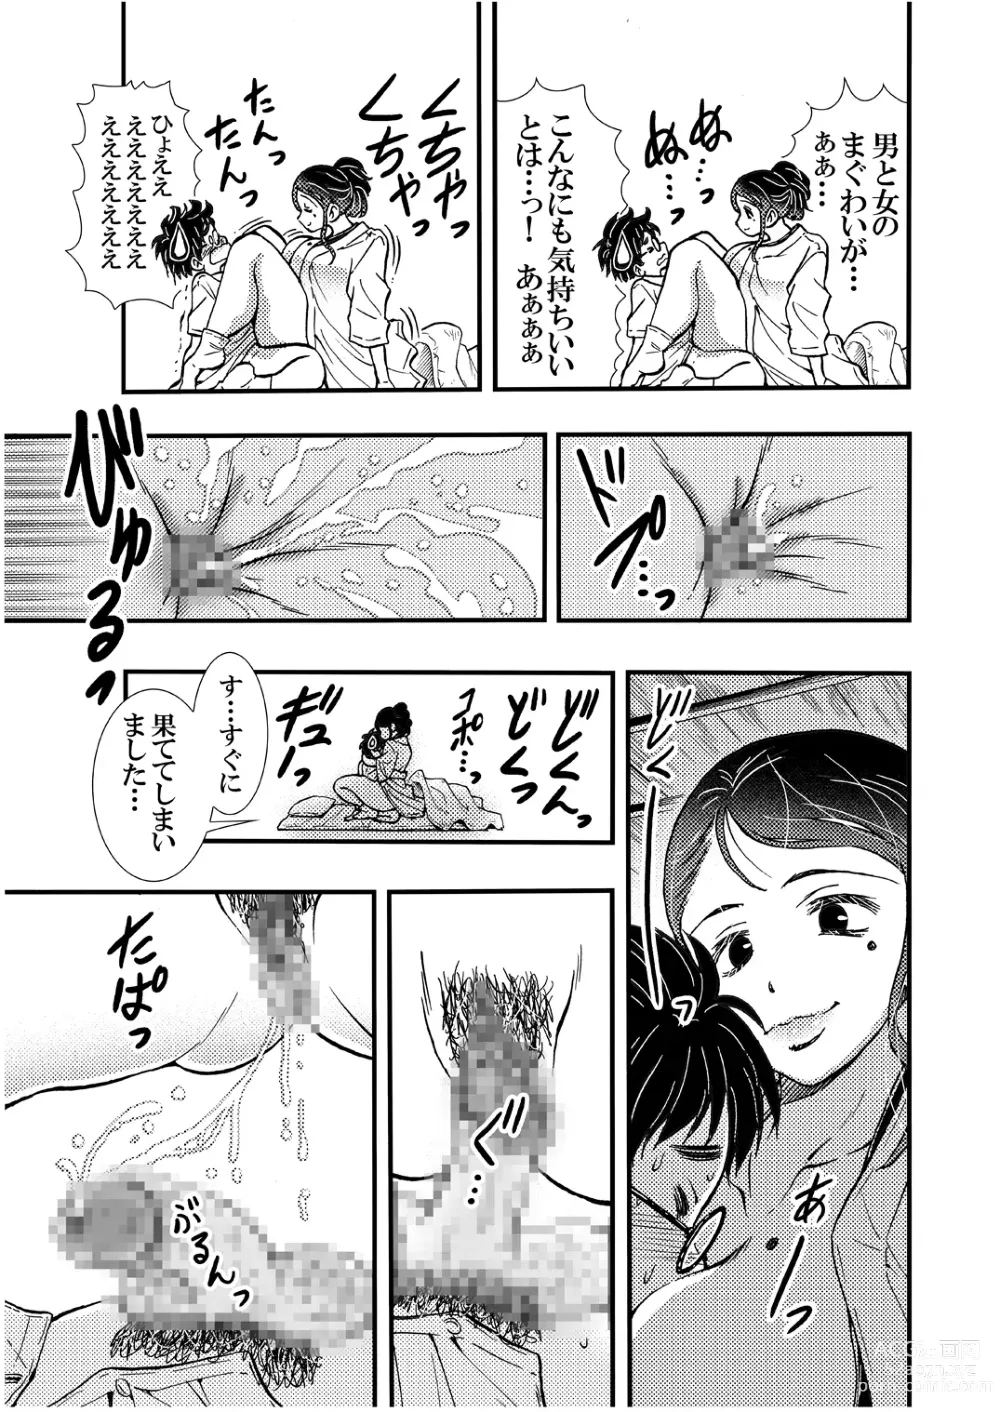 Page 11 of doujinshi Ero Okami Showa no Joji